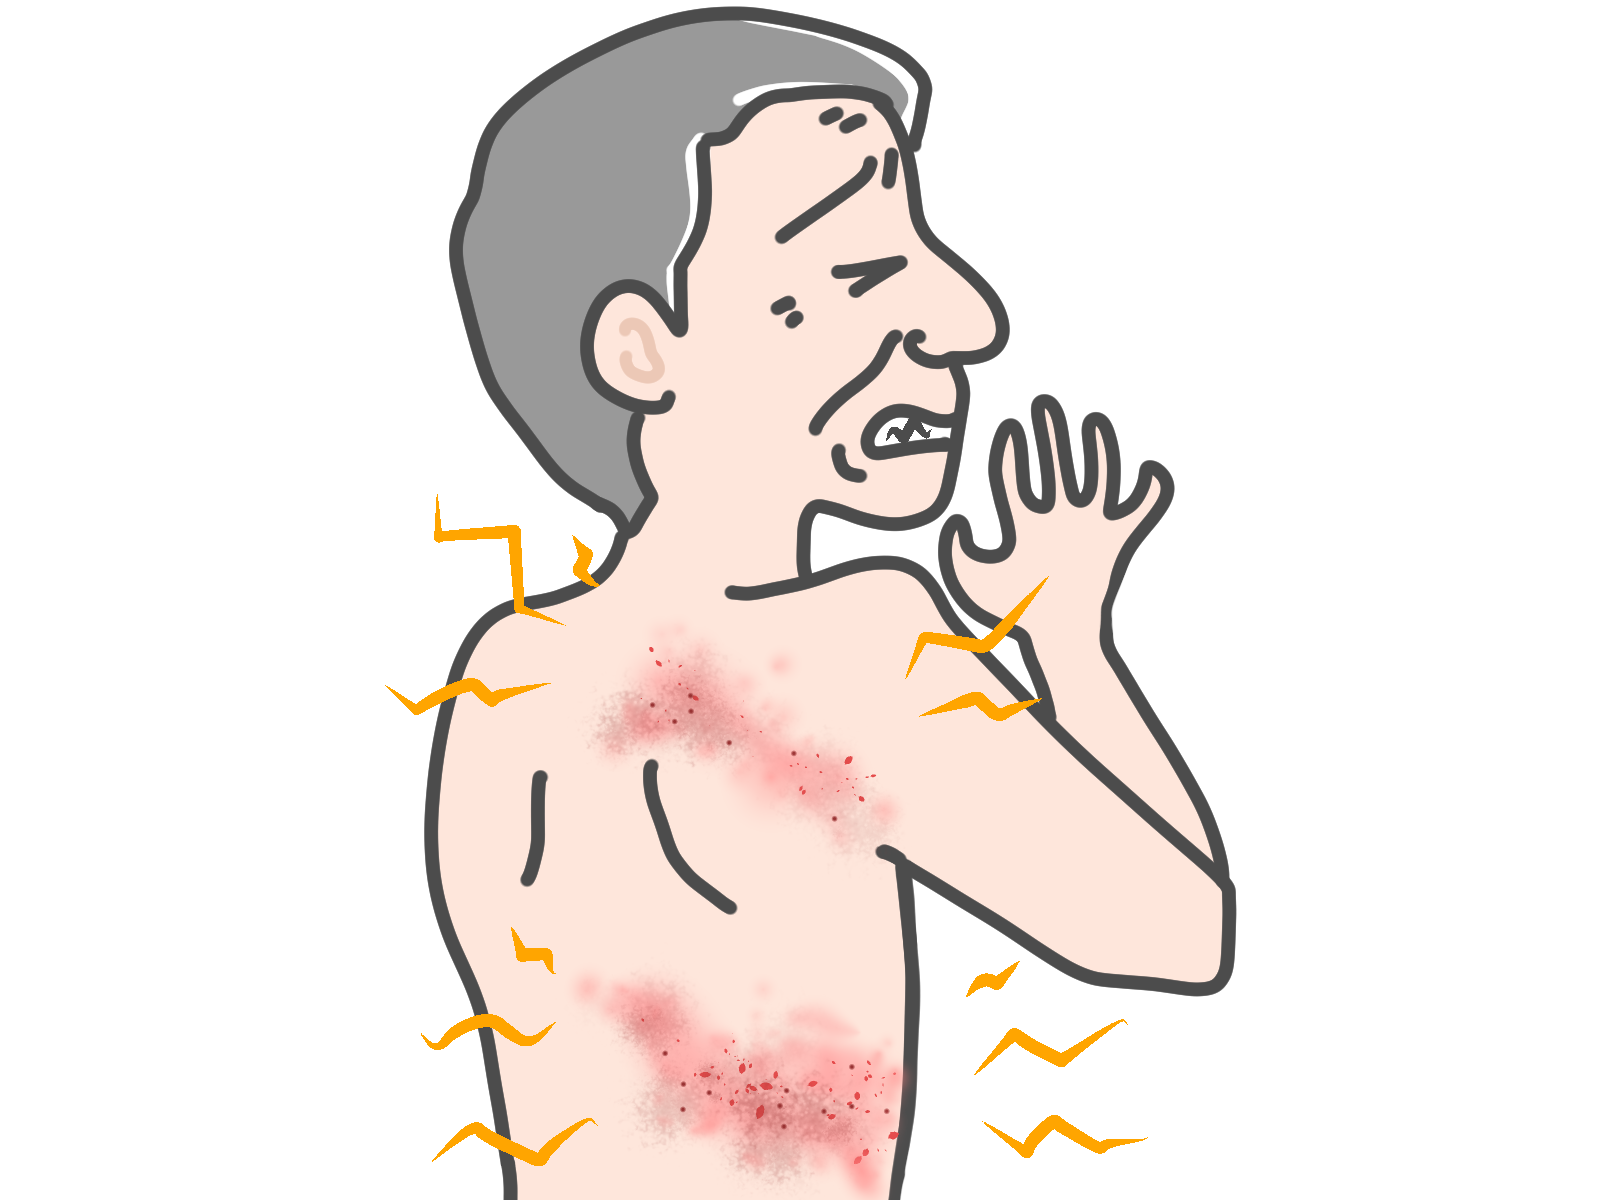 帯状疱疹の症状